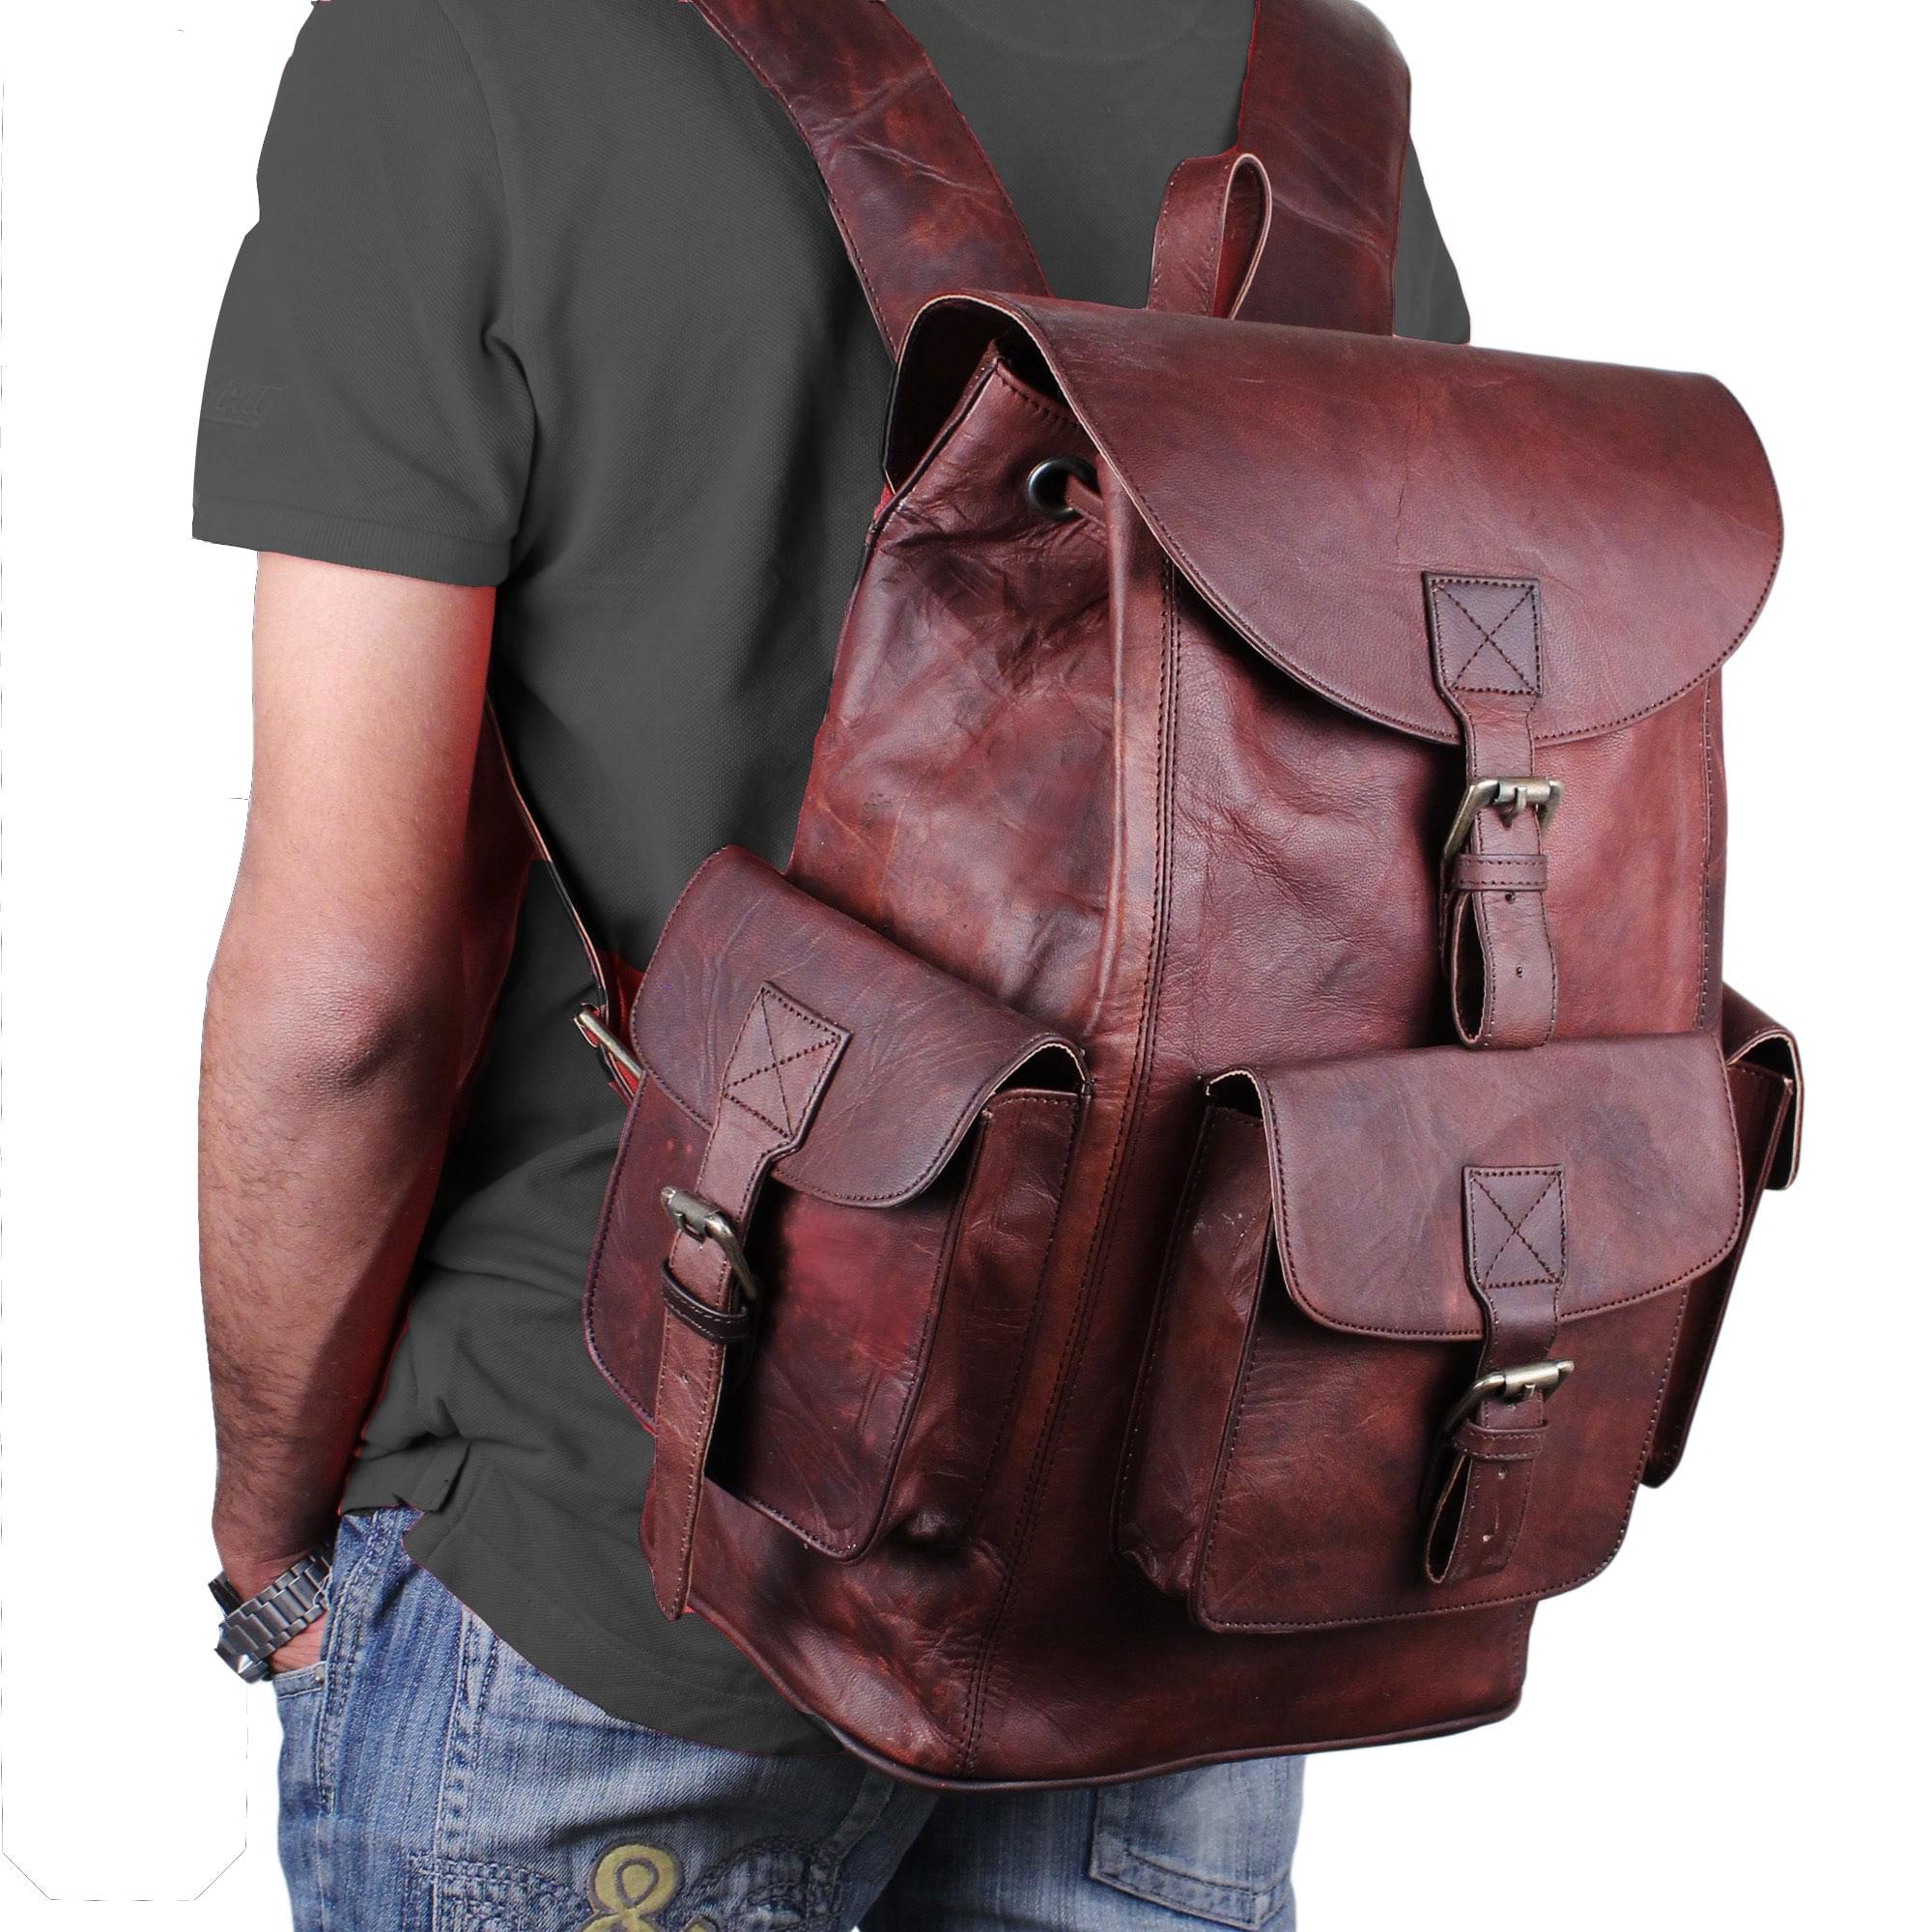 Genuine Vintage Leather Brown Backpack